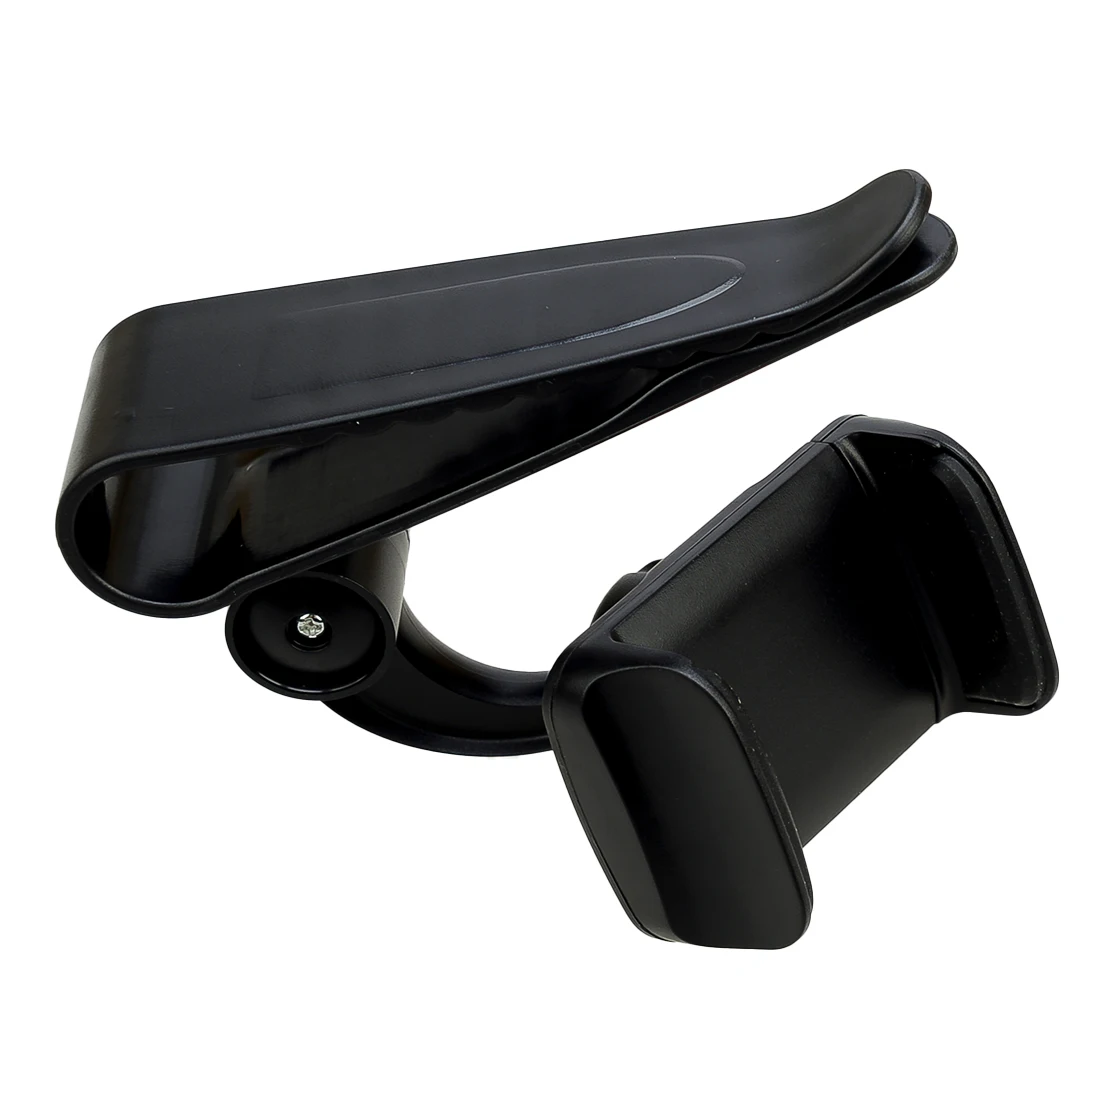 אוניברסלי שחור 360° Rotatable המכונית מגן השמש הטלפון הר מחזיק עם קליפ פלסטיק ABS - 3